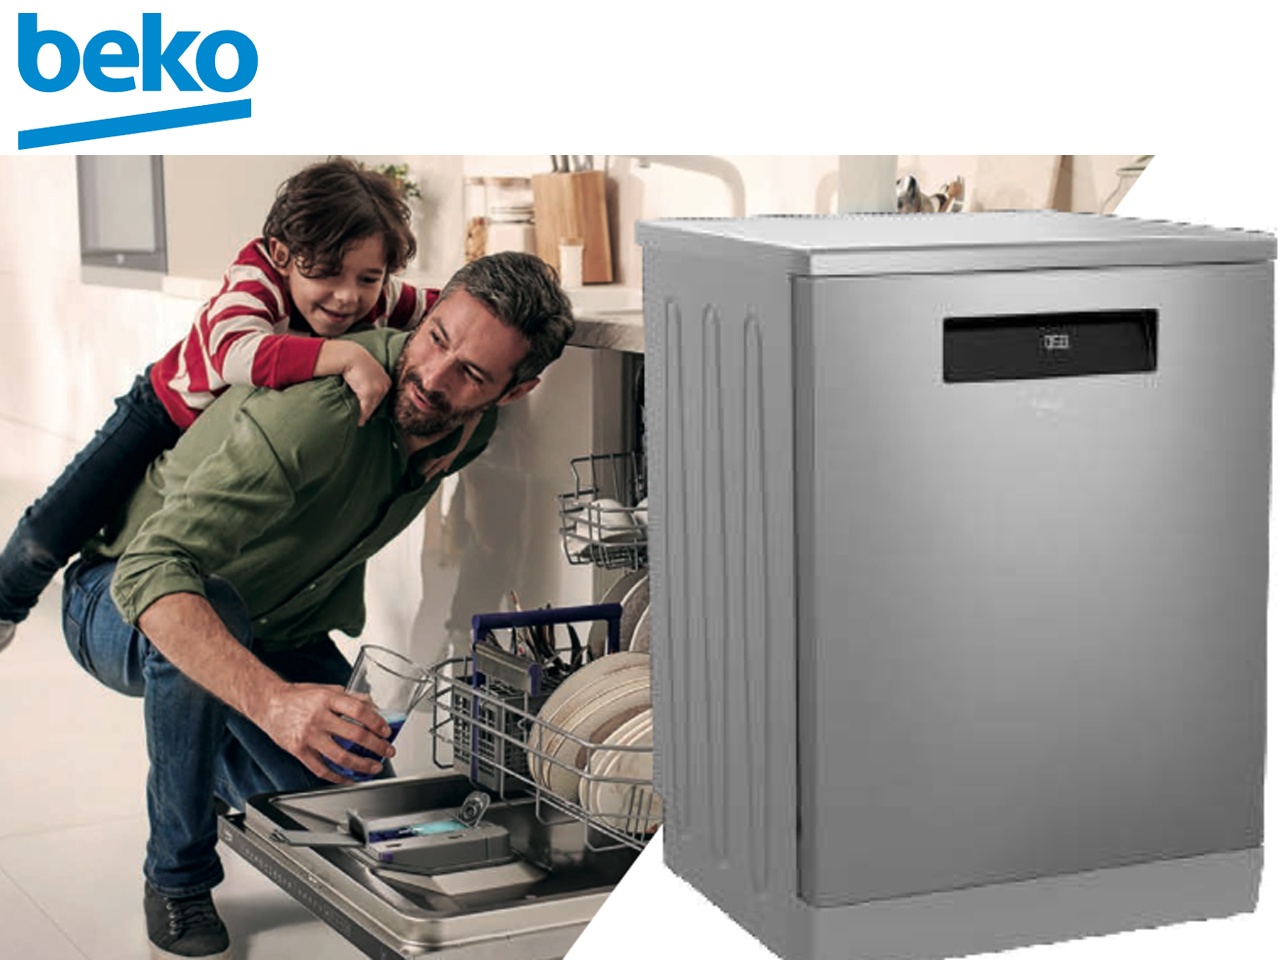 Beko lance son premier lave-vaisselle AutoDose